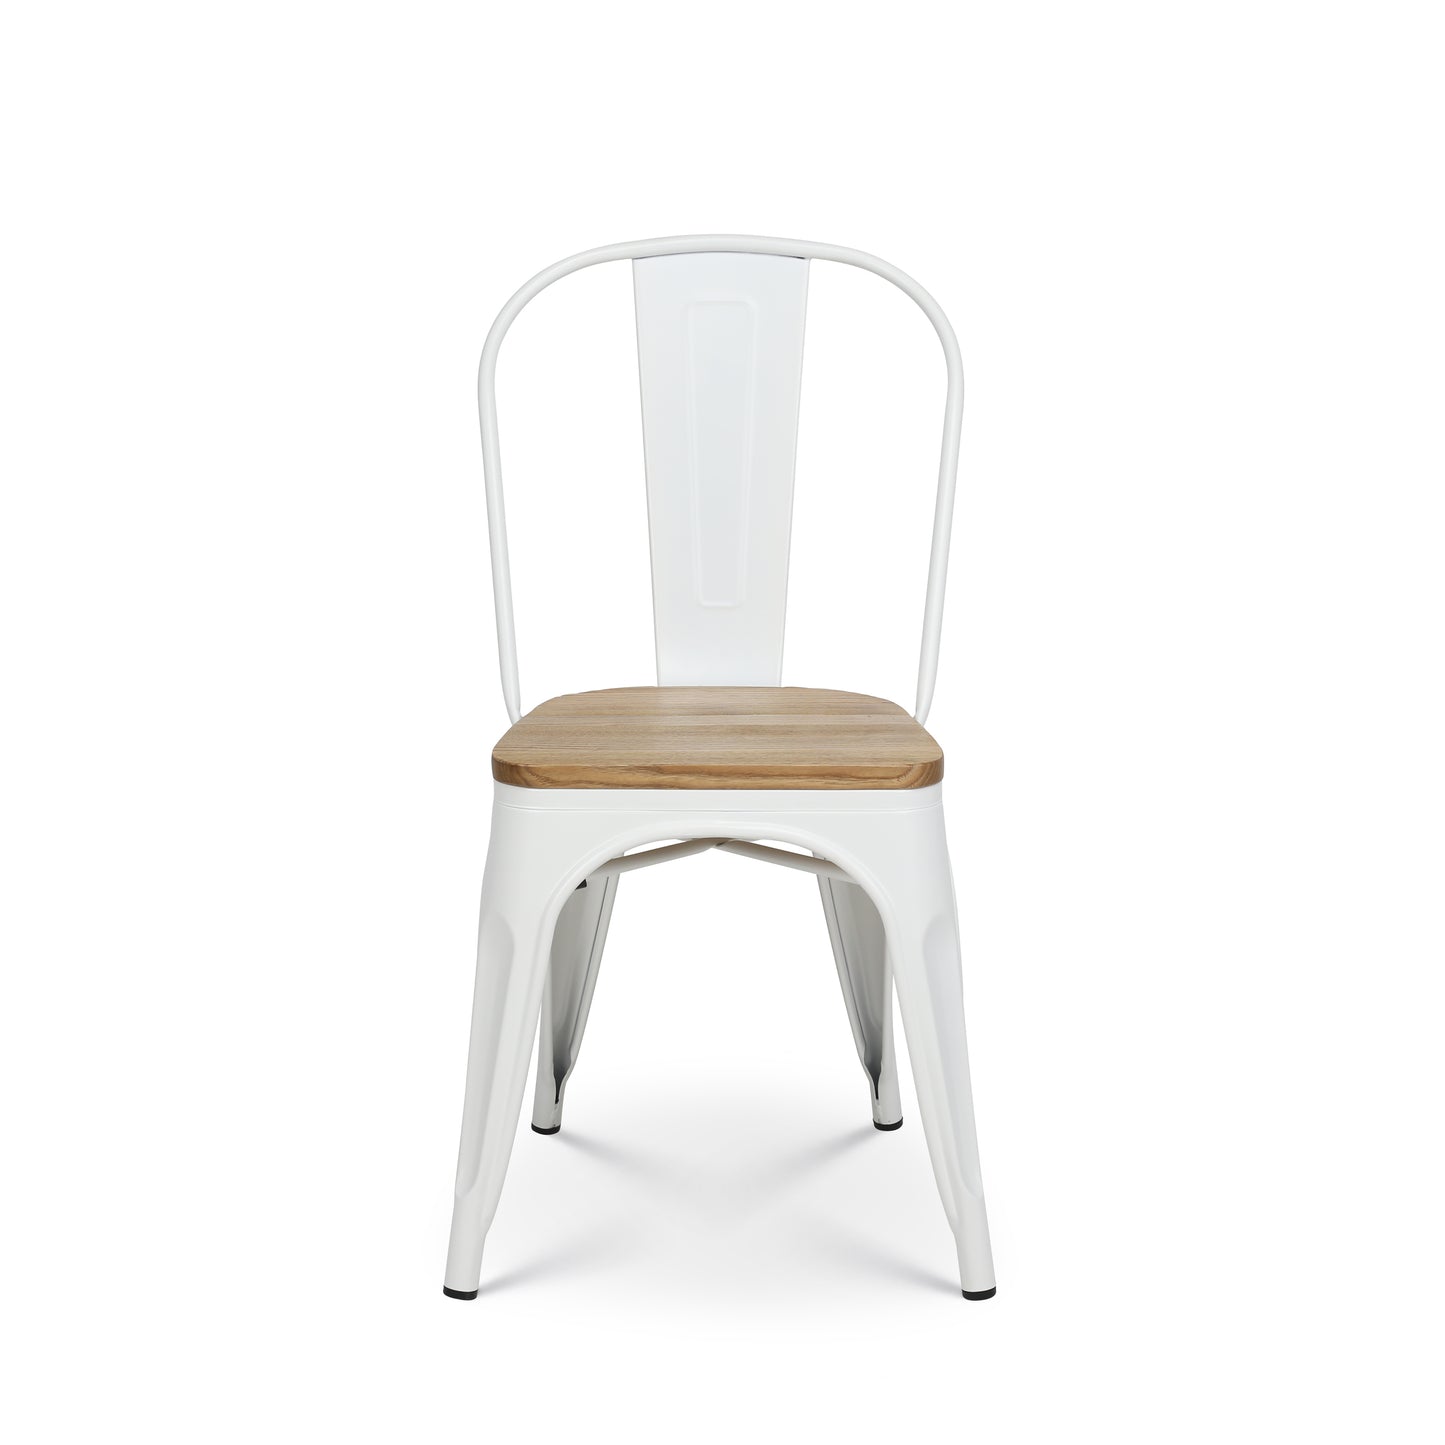 Chaise en métal blanc mat et assise en bois clair - Style industriel